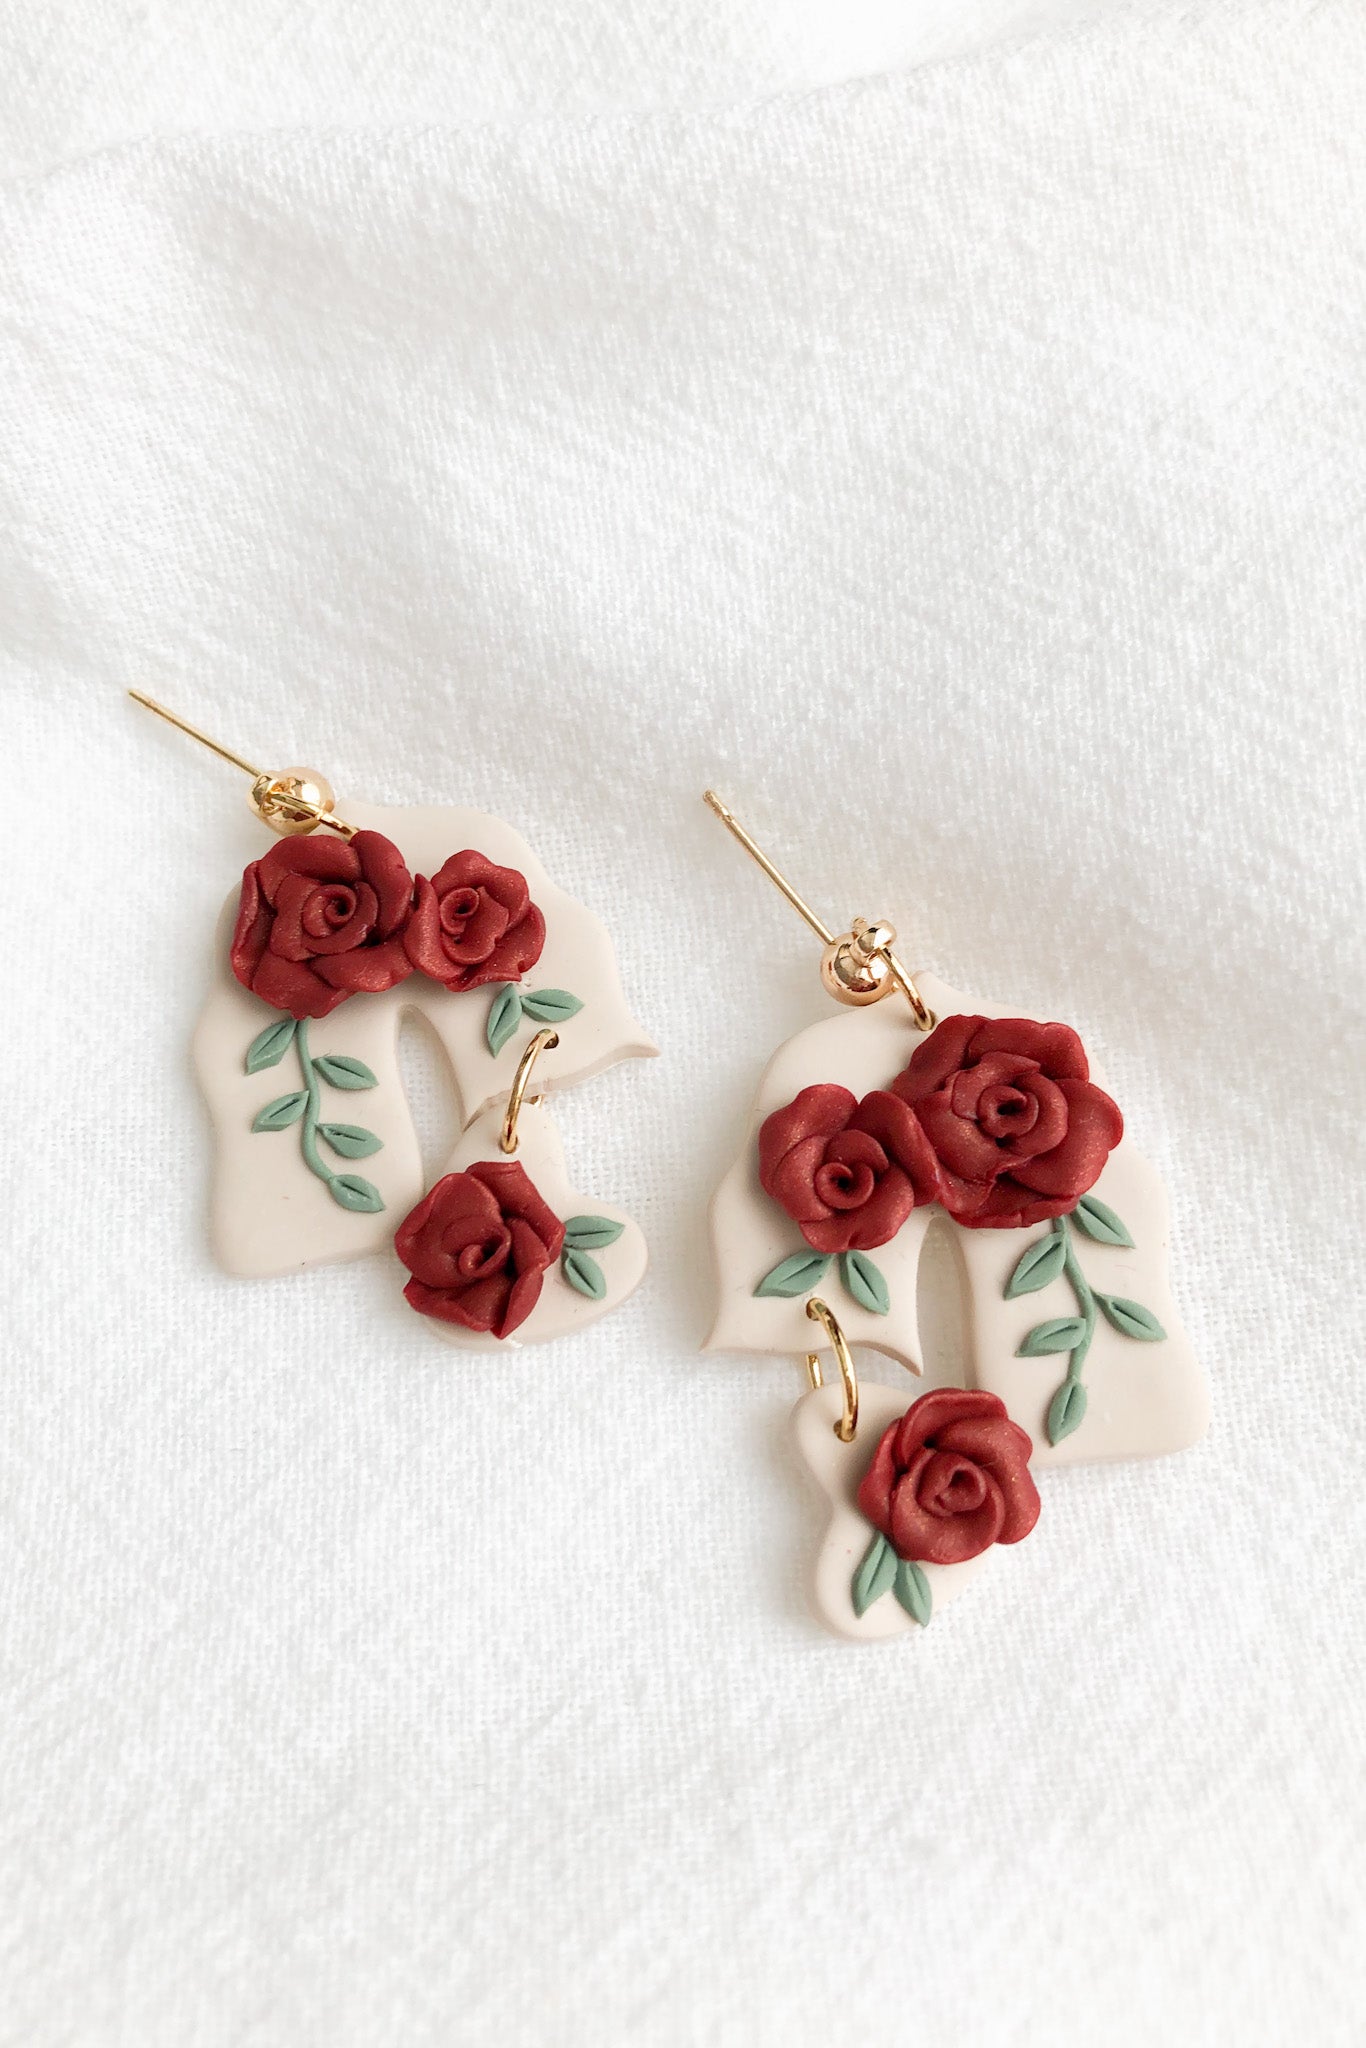 Rose Treasures Handmade Clay Earrings